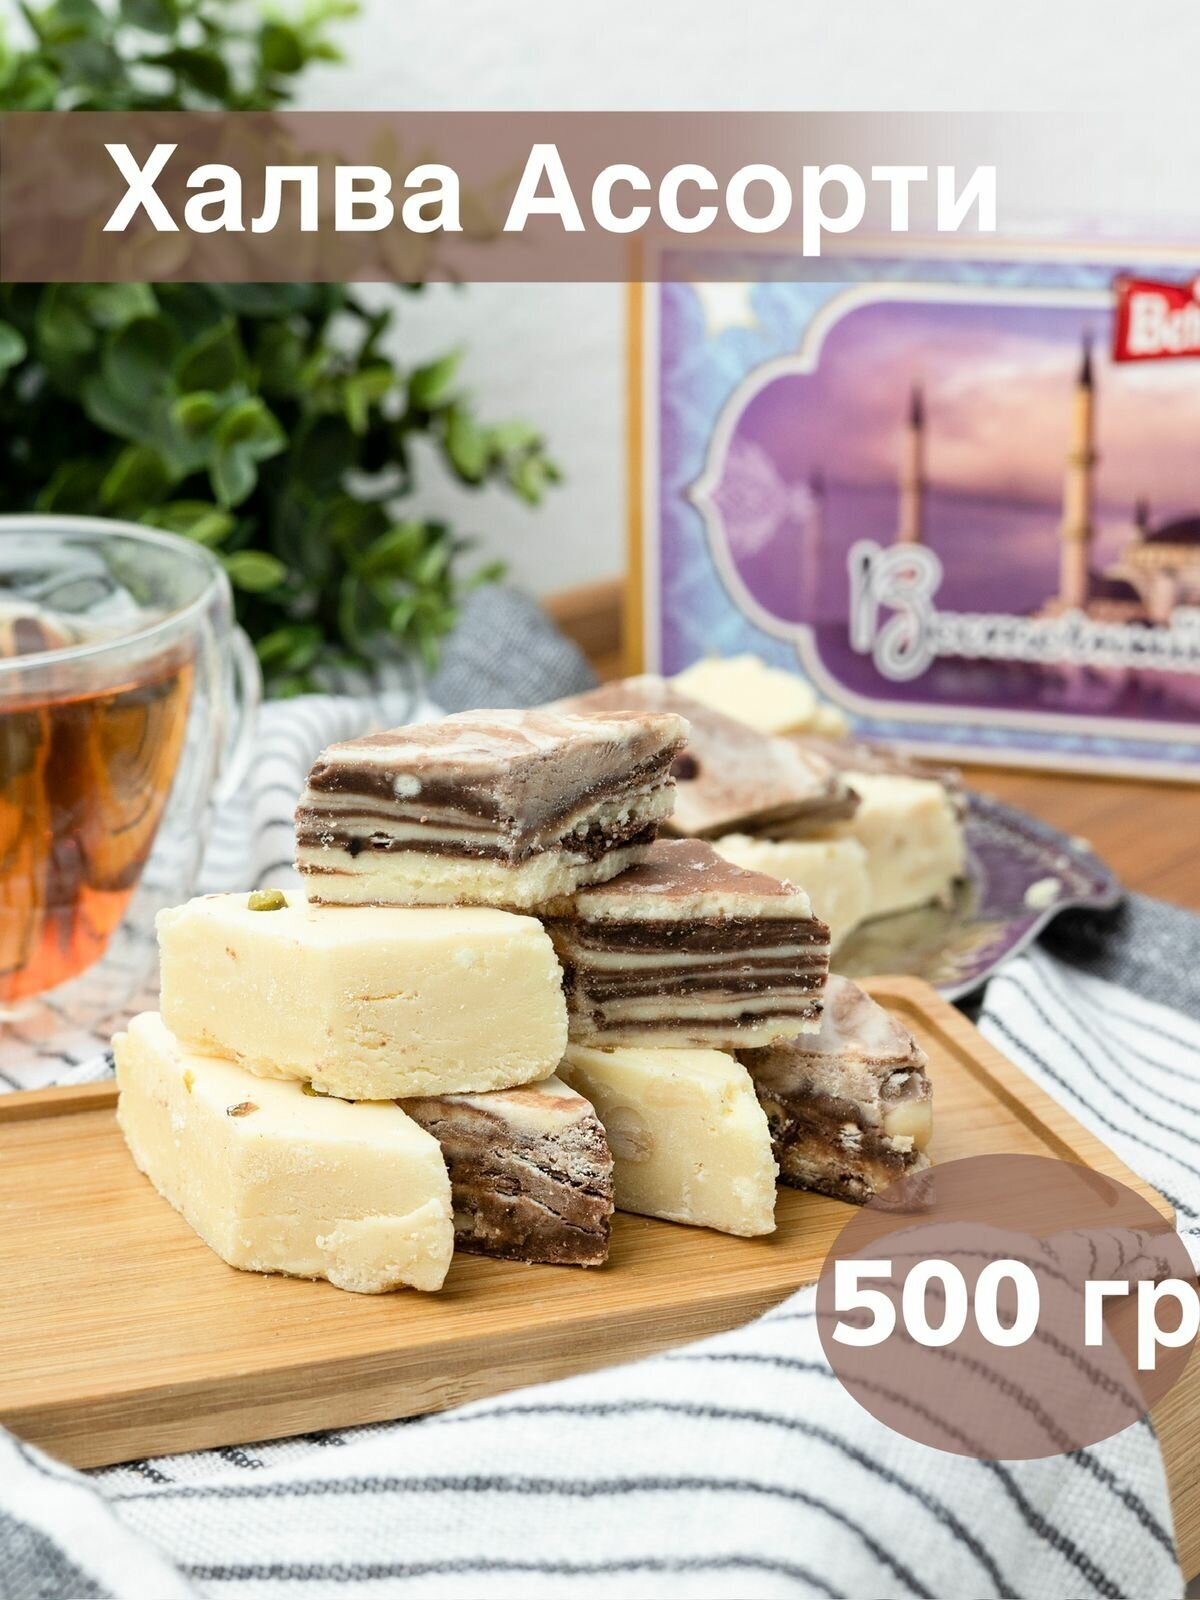 Халва Мраморная Ассорти 500 г восточные сладости